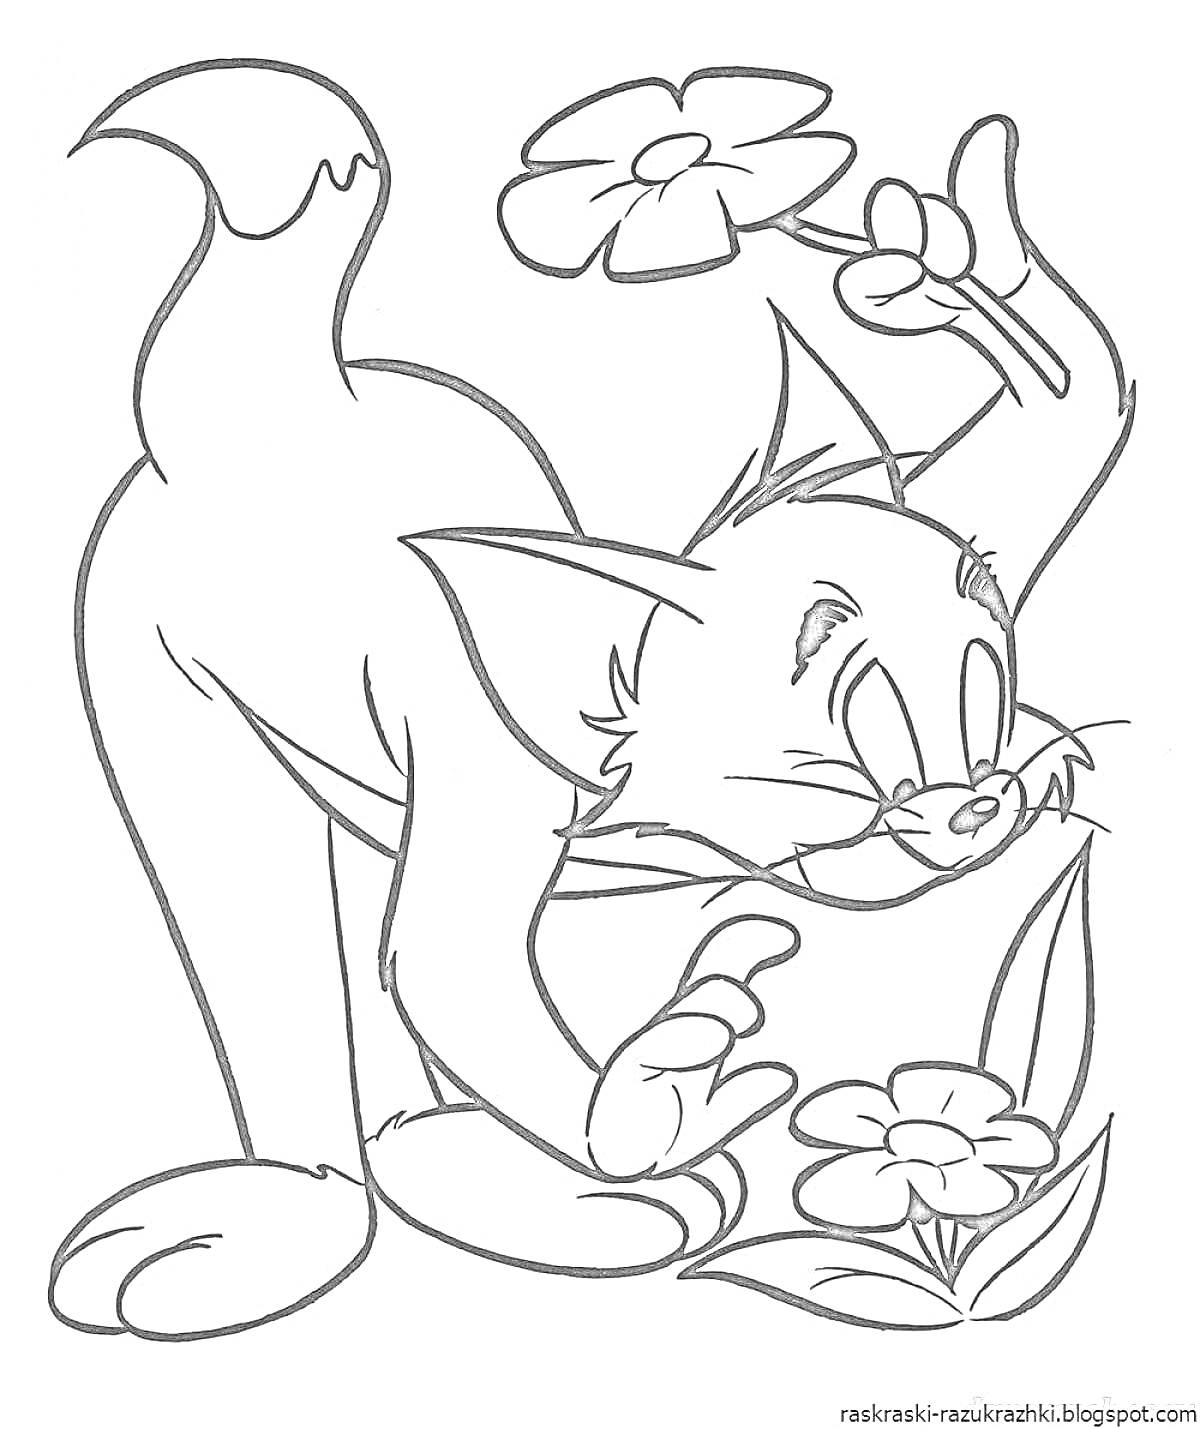 Раскраска Кот с цветами - кот, держащий цветок в правой лапе и нюхающий цветы на земле